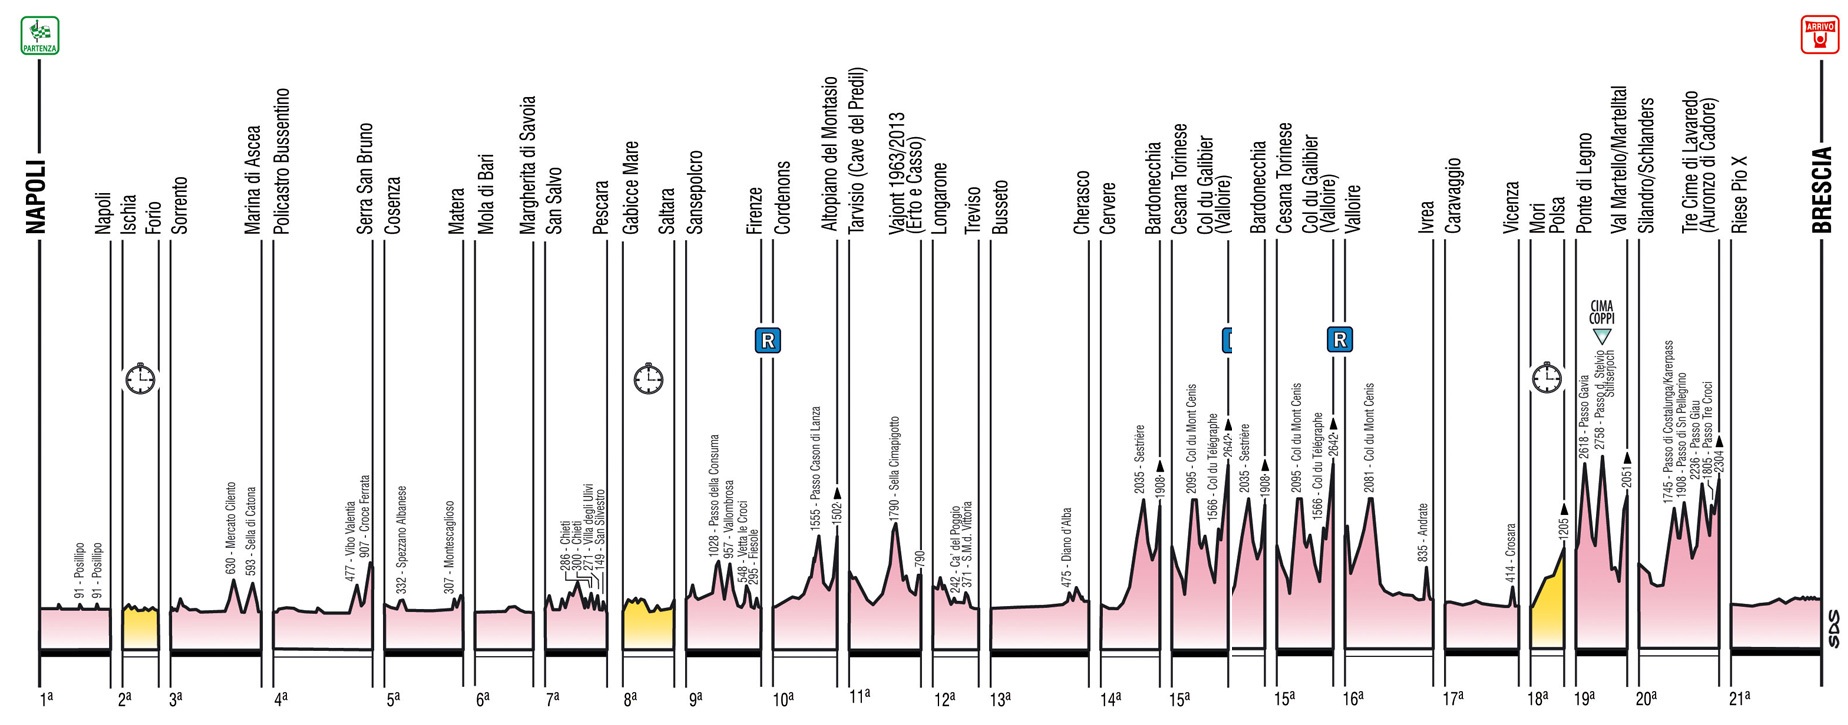 Hhenprofil-bersicht Giro dItalia 2013